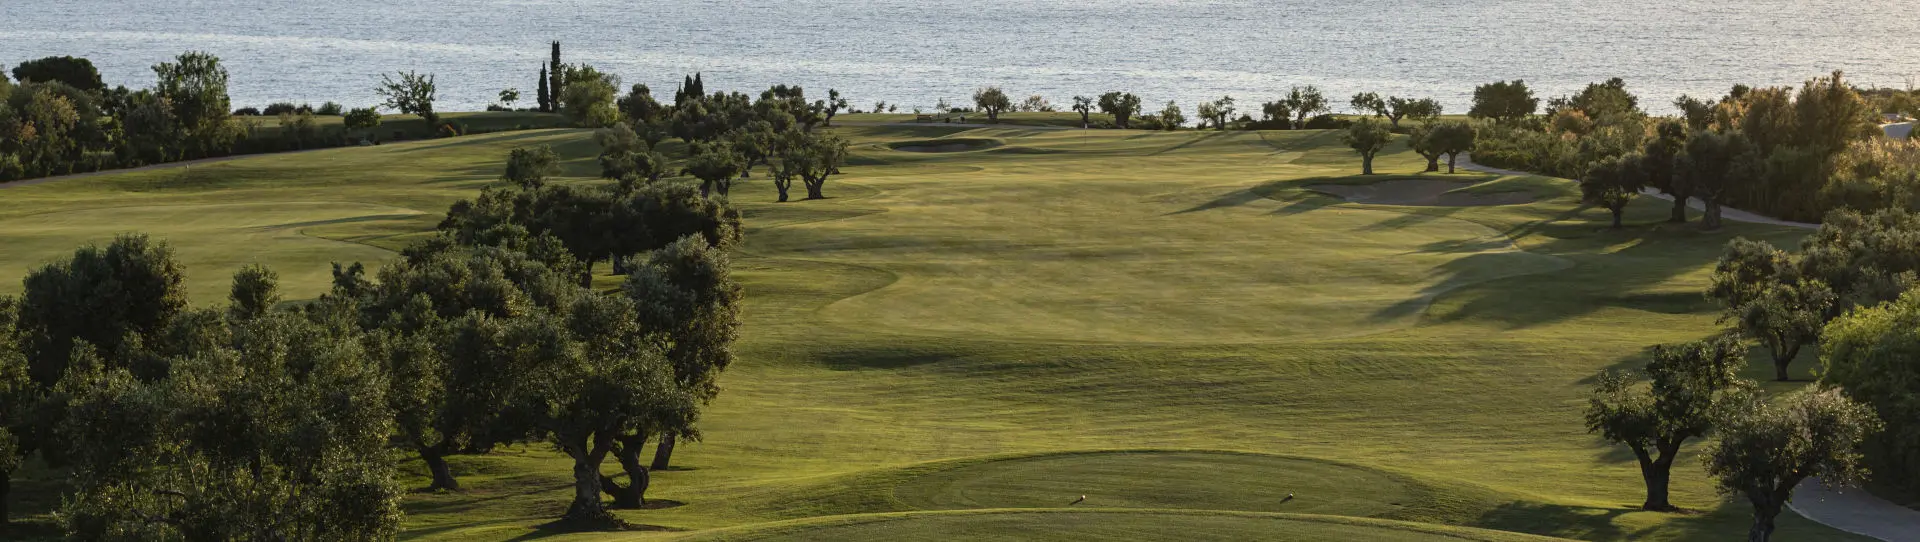 Greece golf courses - The Bay Course - Photo 2